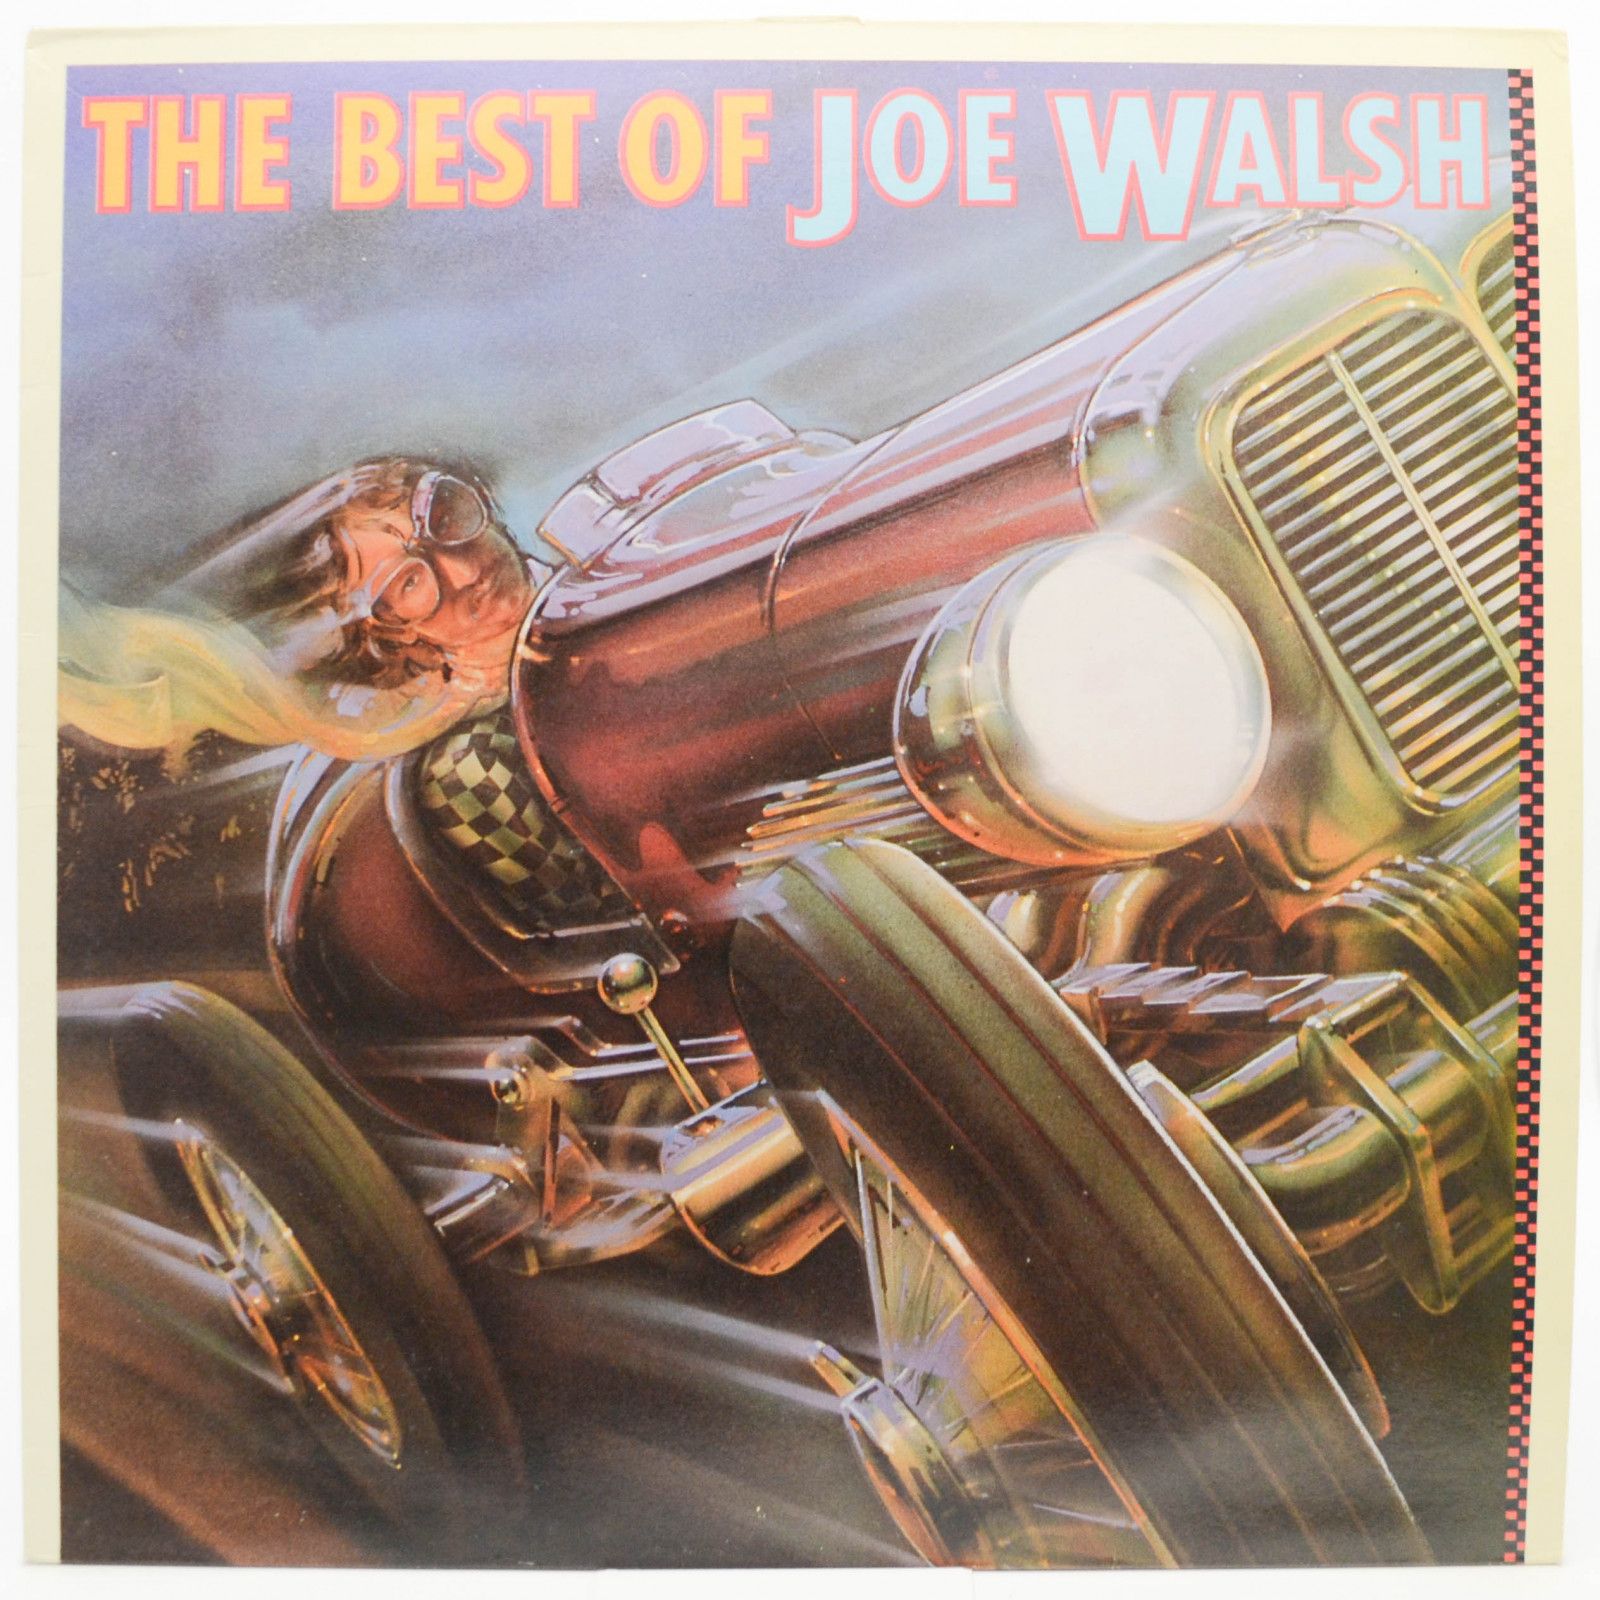 Joe Walsh — The Best Of Joe Walsh, 1978